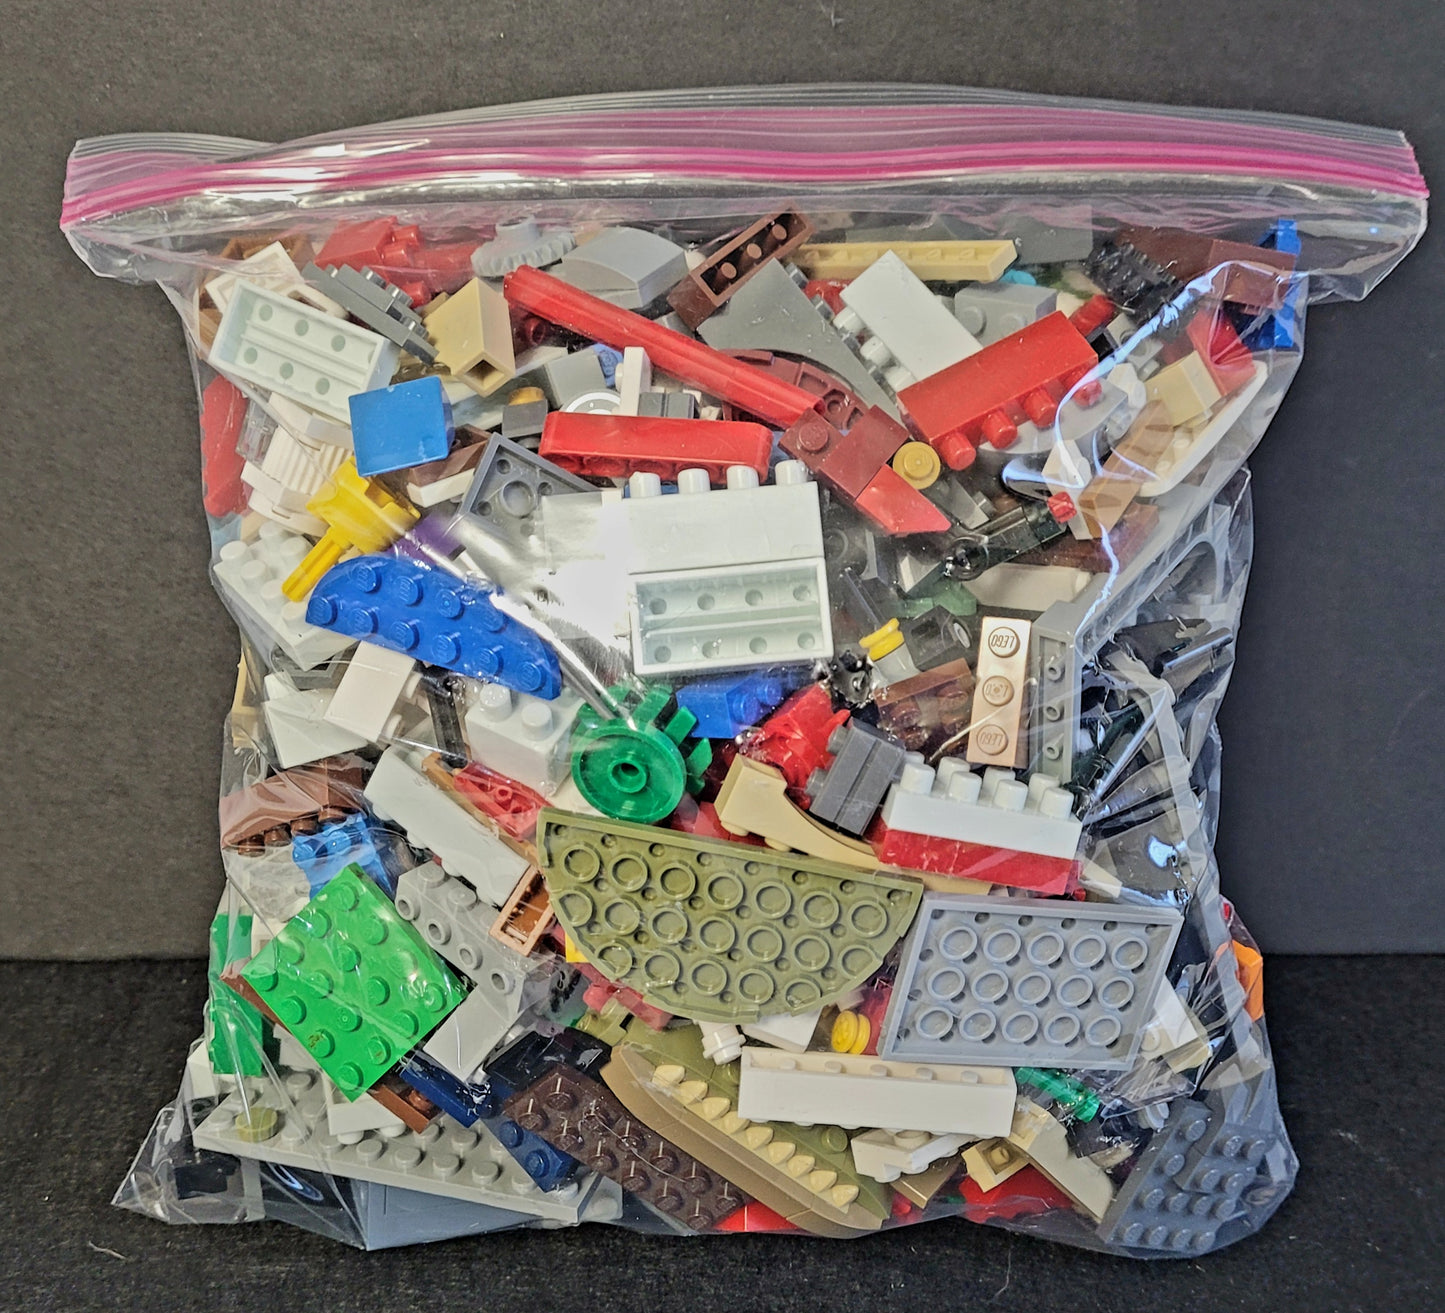 LEGOS Grab Bag: A 2.5 lb. of Legos (1 of 200 bags)